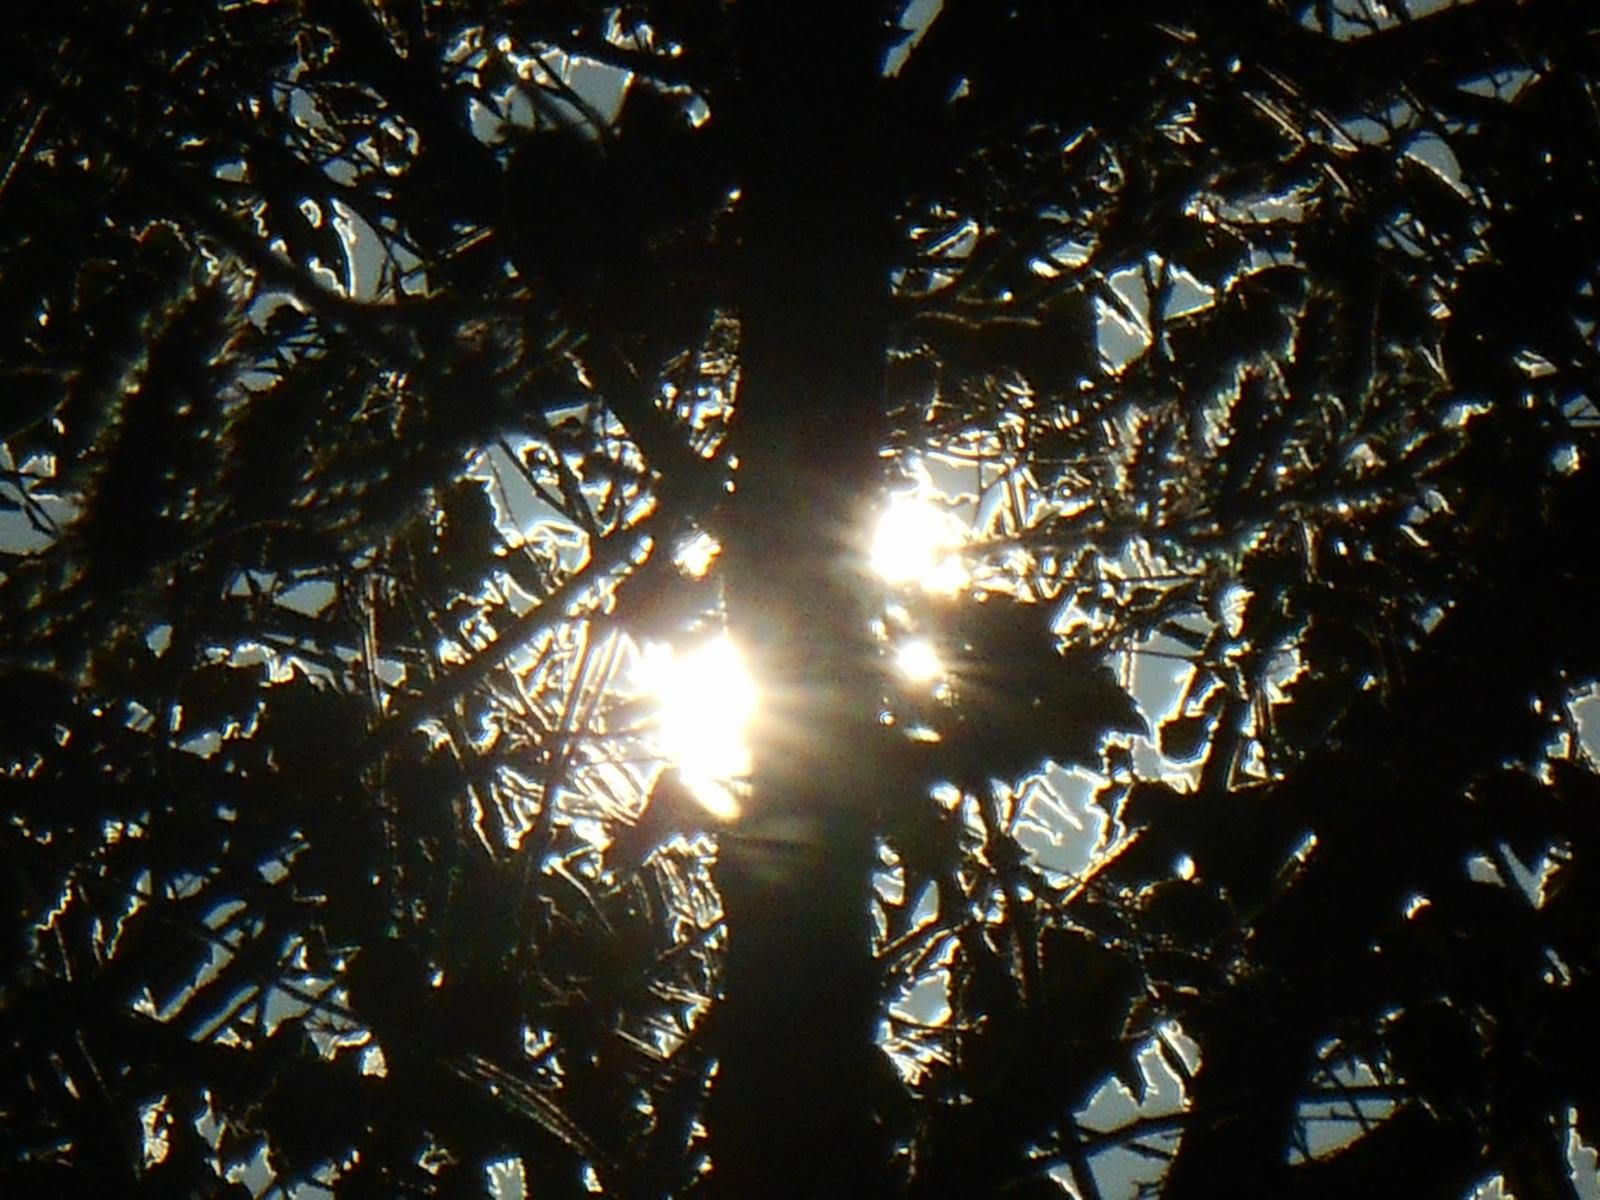 Magnifique contraste entre le bois et le soleil ( Les Moutiers en Retz )